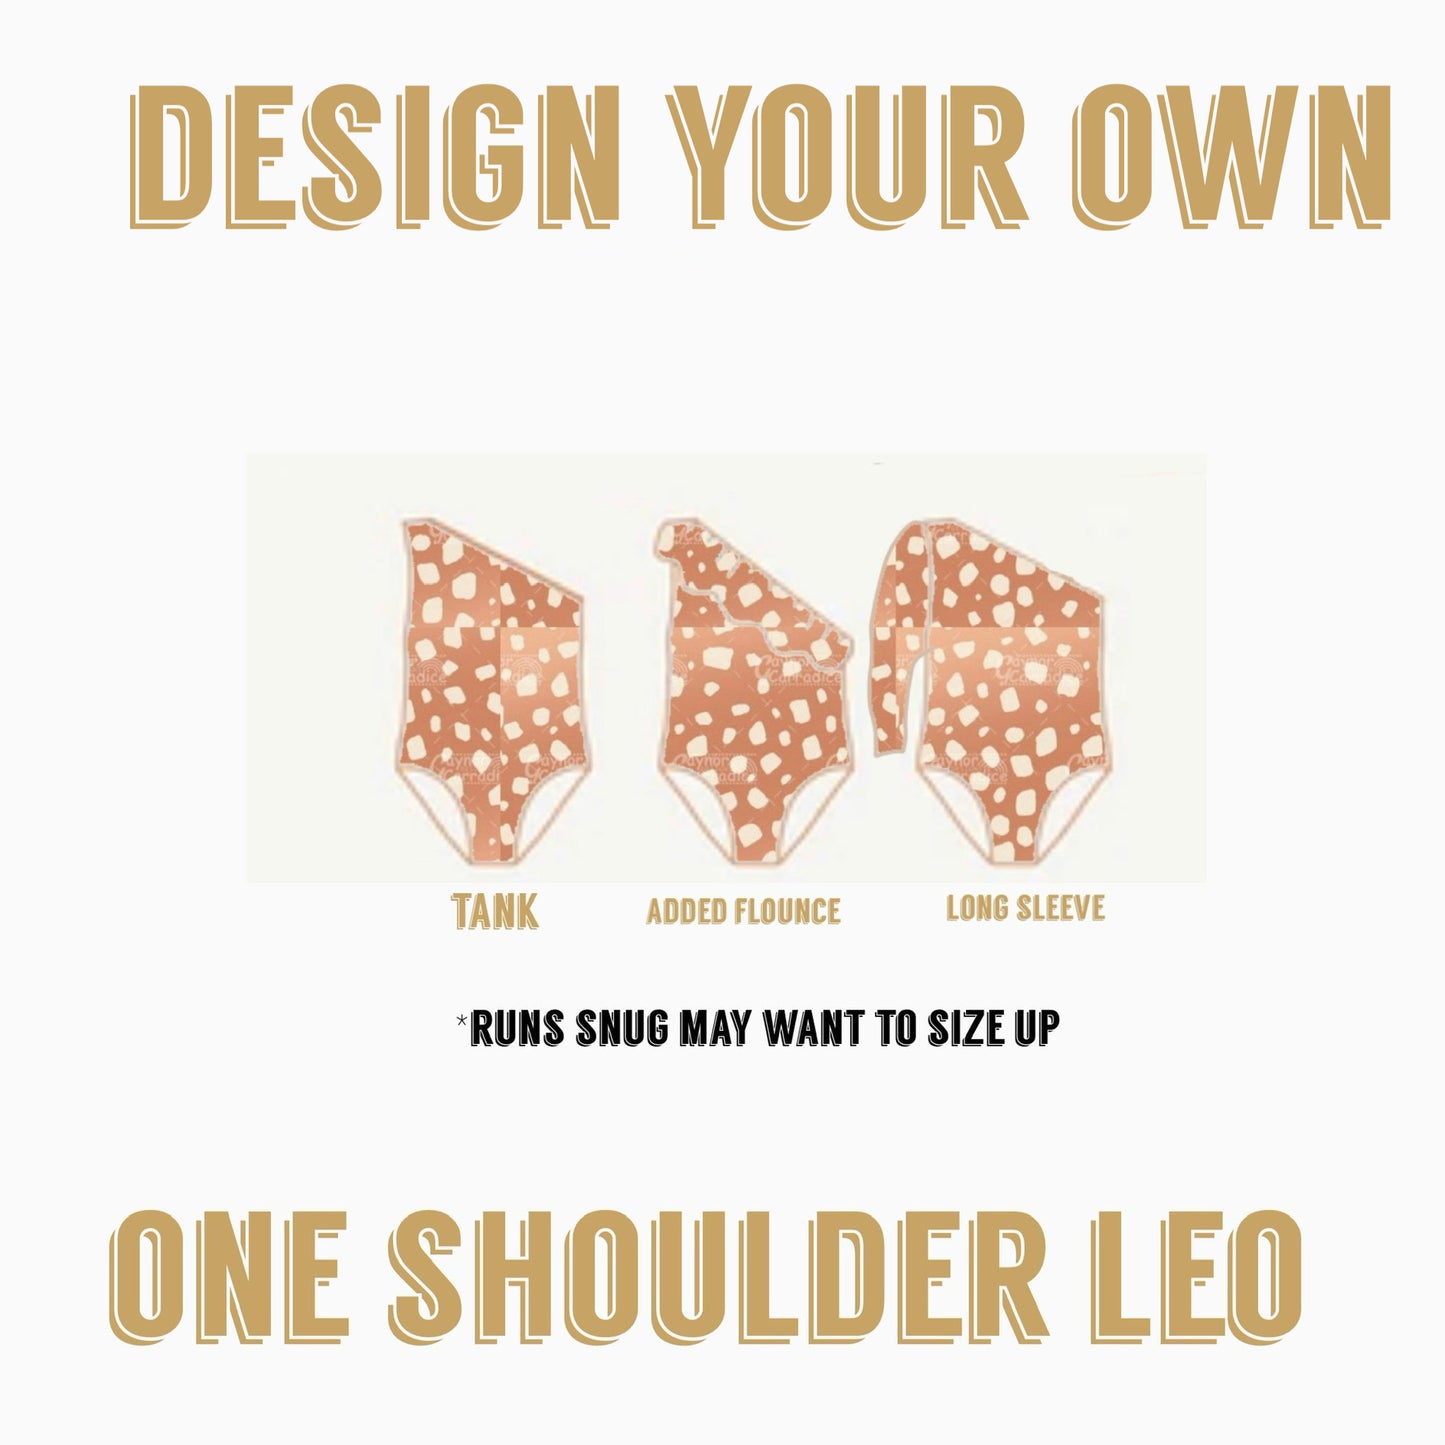 Design Your Own |  One shoulder Leo